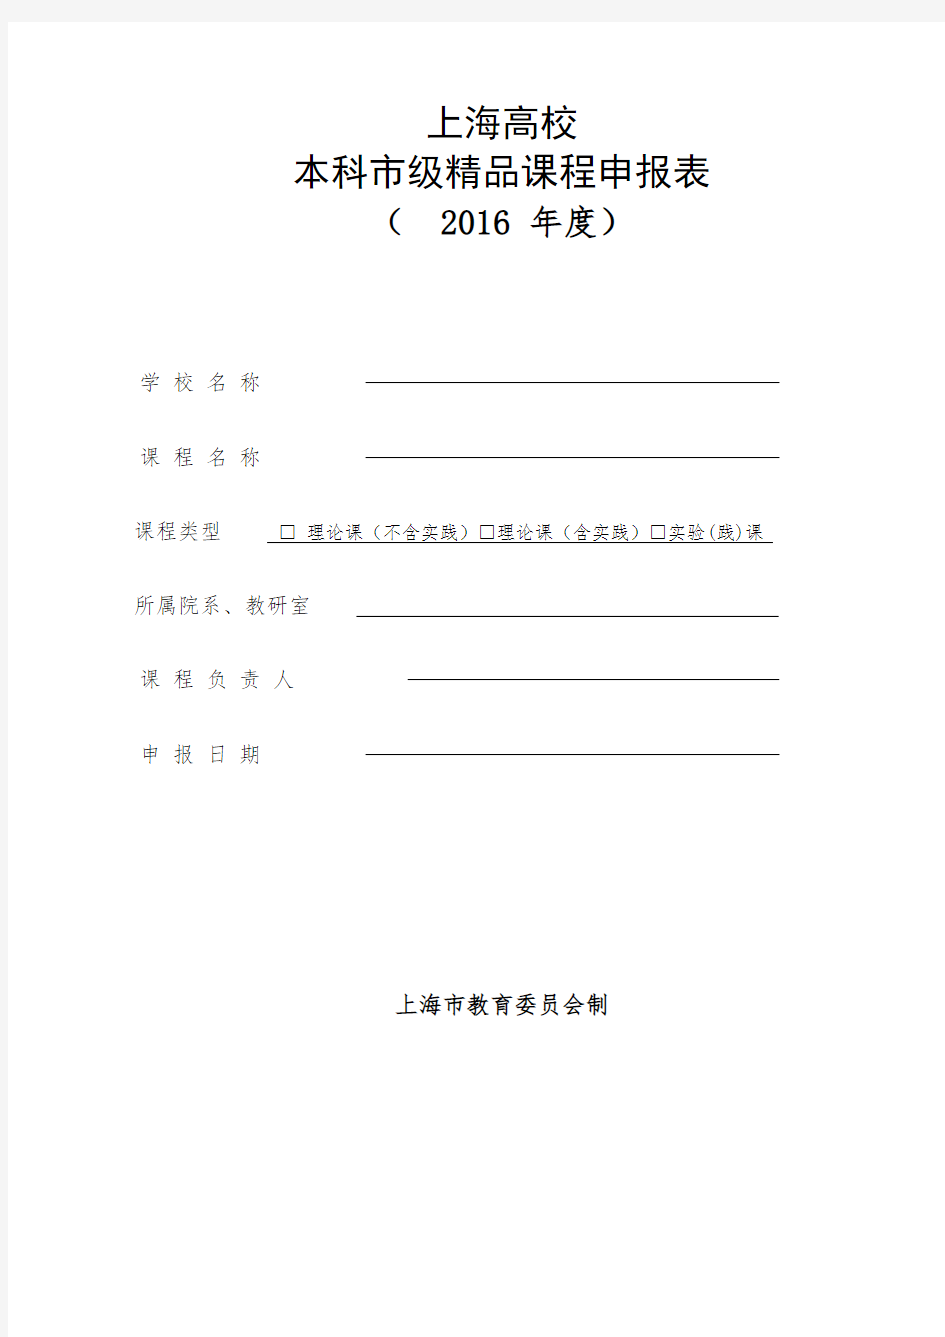 上海高校本科市级精品课程申报表